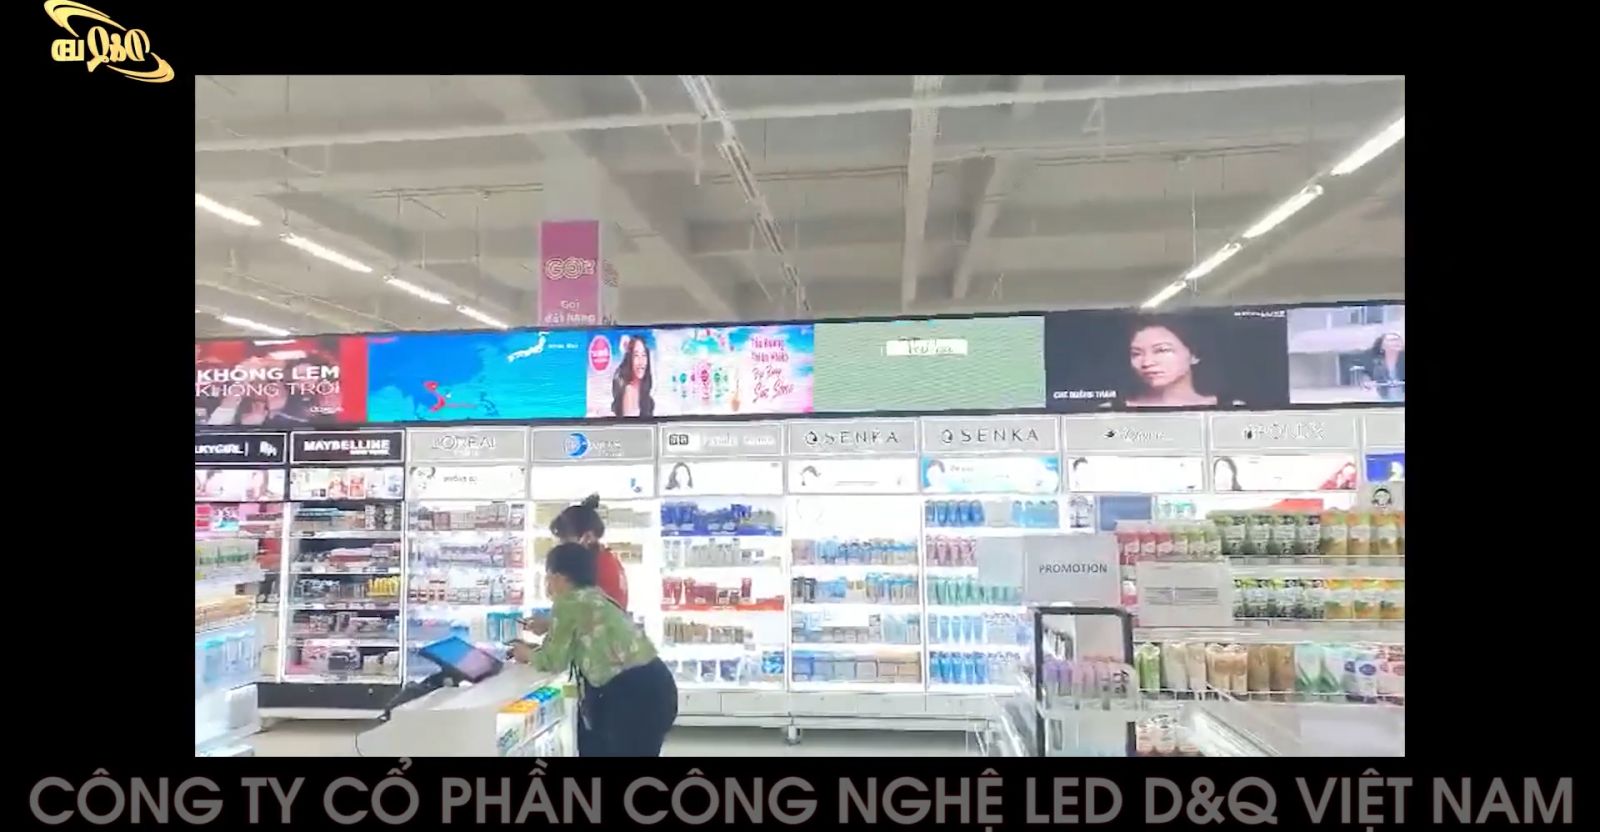 D&Q Việt Nam LẮp đặt Màn hình LEd P3 trong Siêu Thị Aone TP HCM